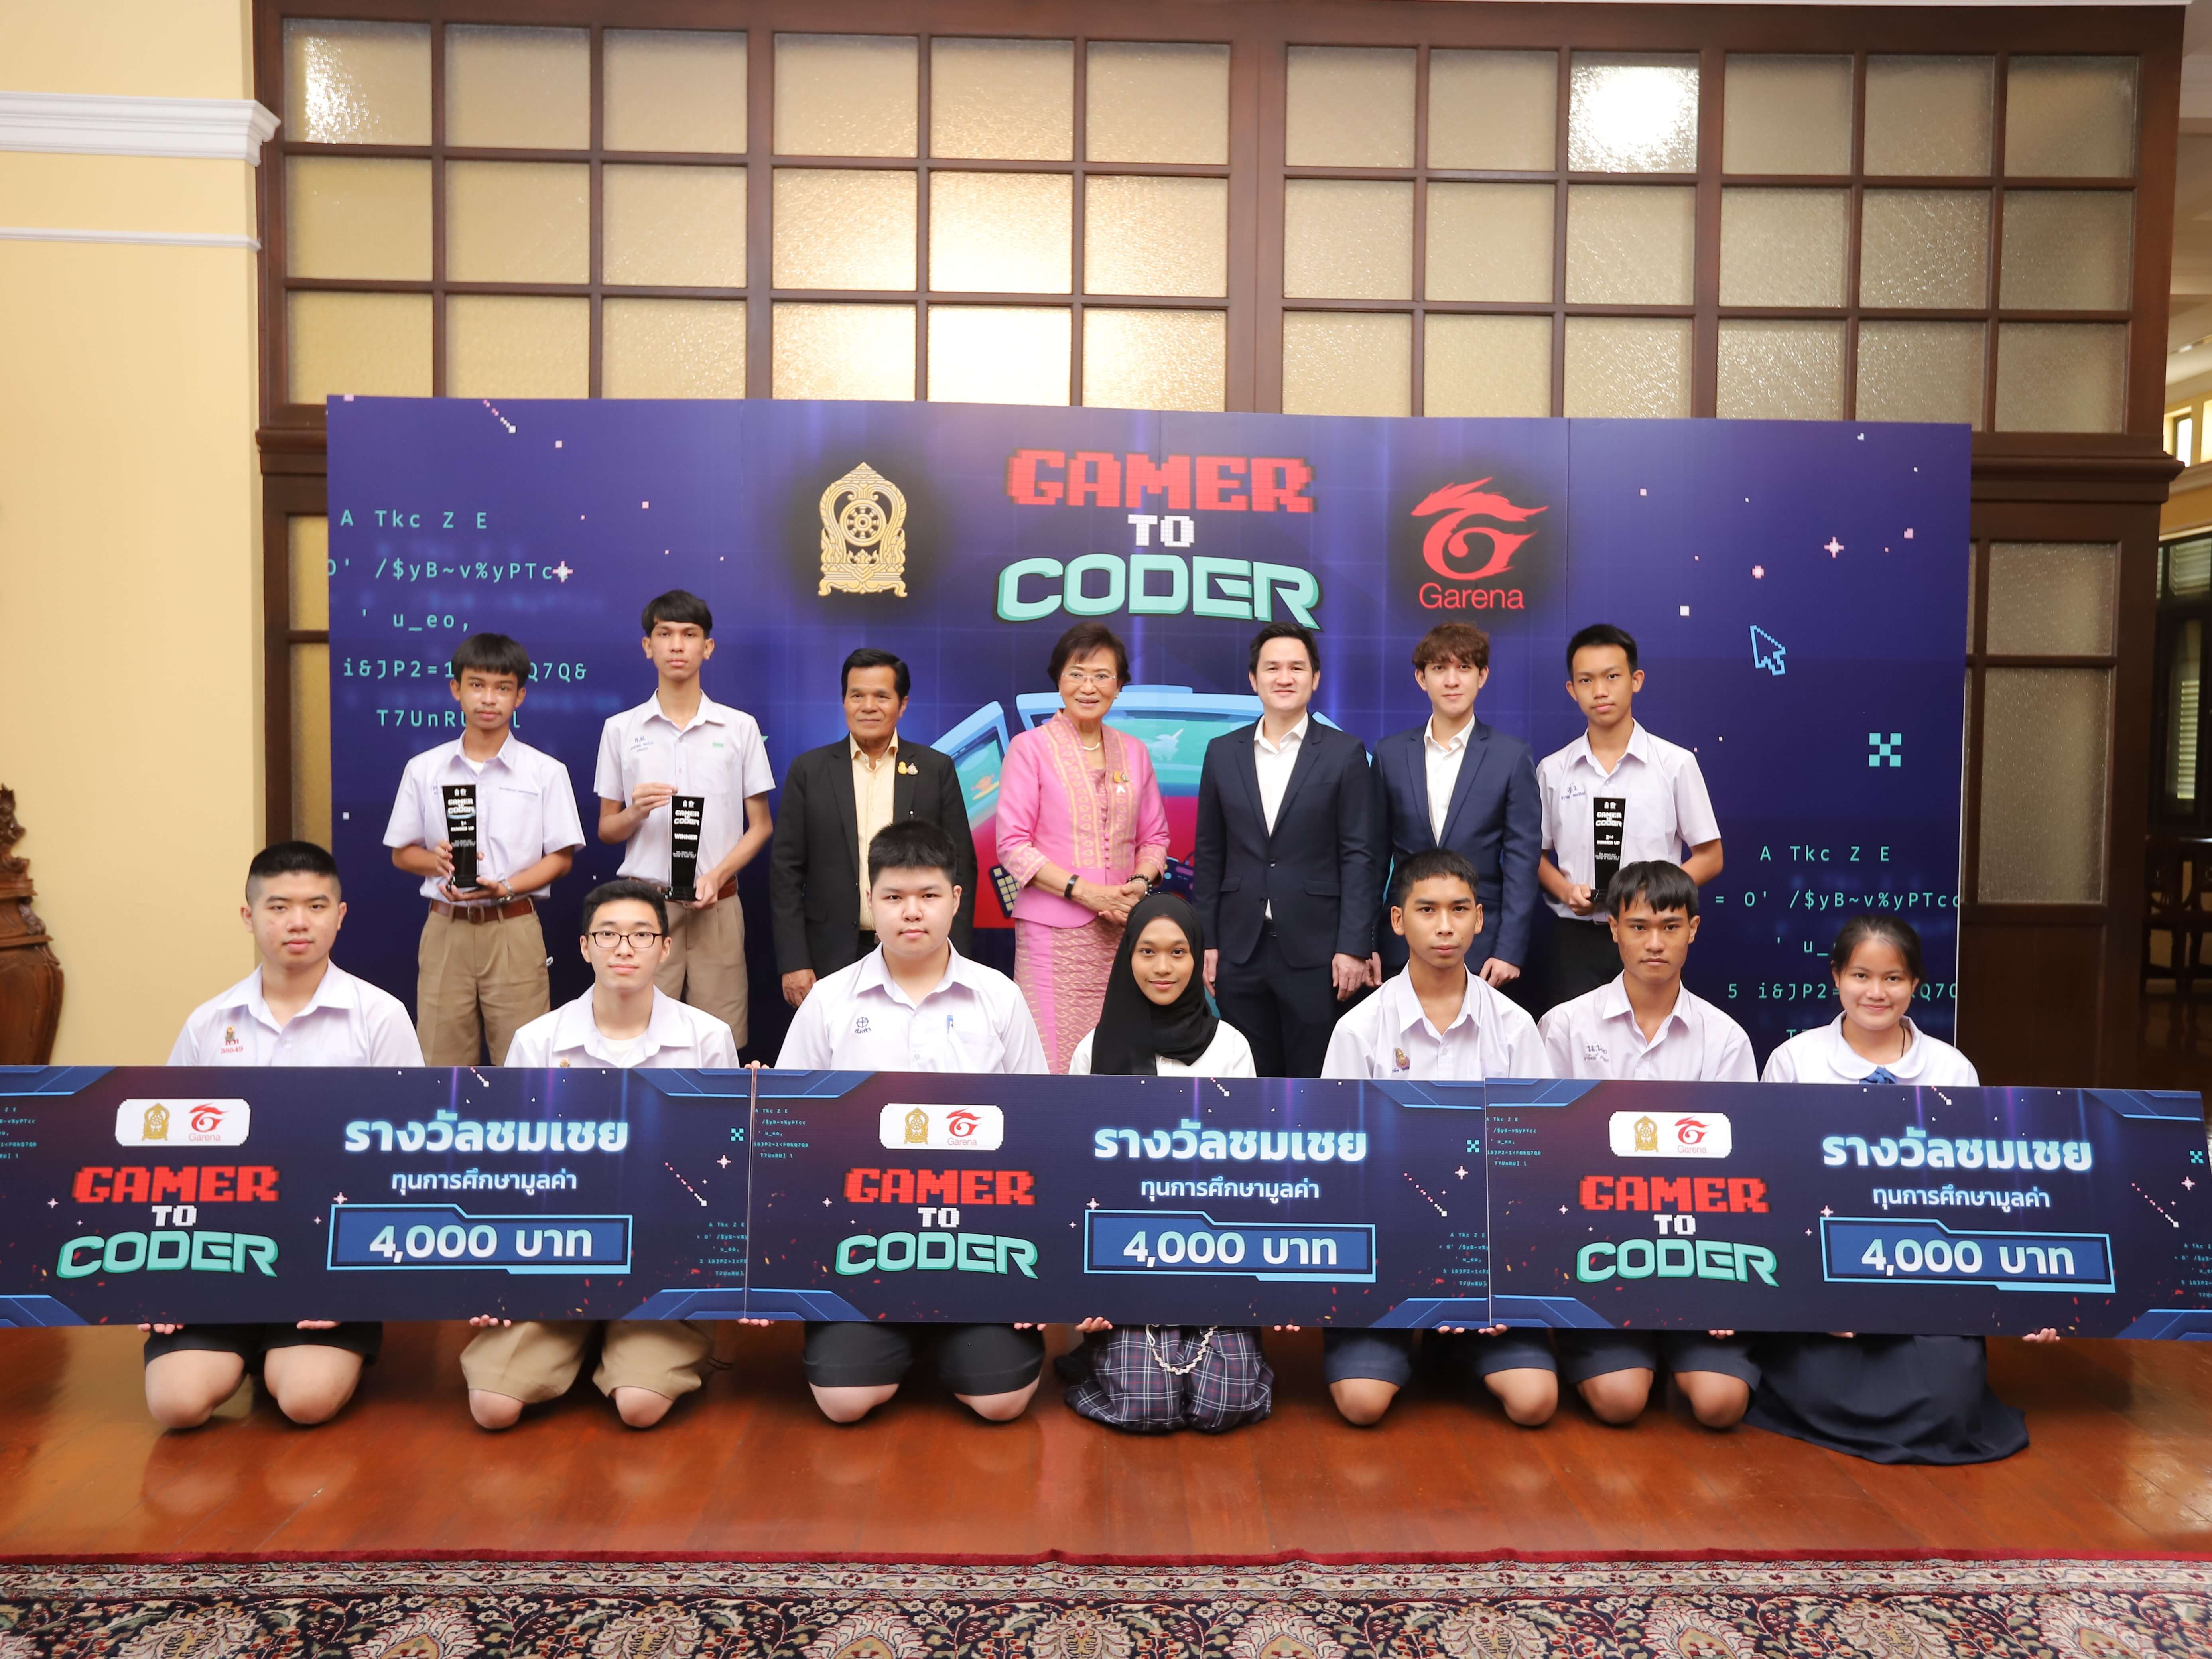 การีนา ชูความสำเร็จ โครงการ Gamer to Coder ปั้นนักเขียนโปรแกรมรุ่นใหม่ พร้อมประกาศผลผู้ชนะ และมอบรางวัลทุนการศึกษากว่า 100,000 บาท